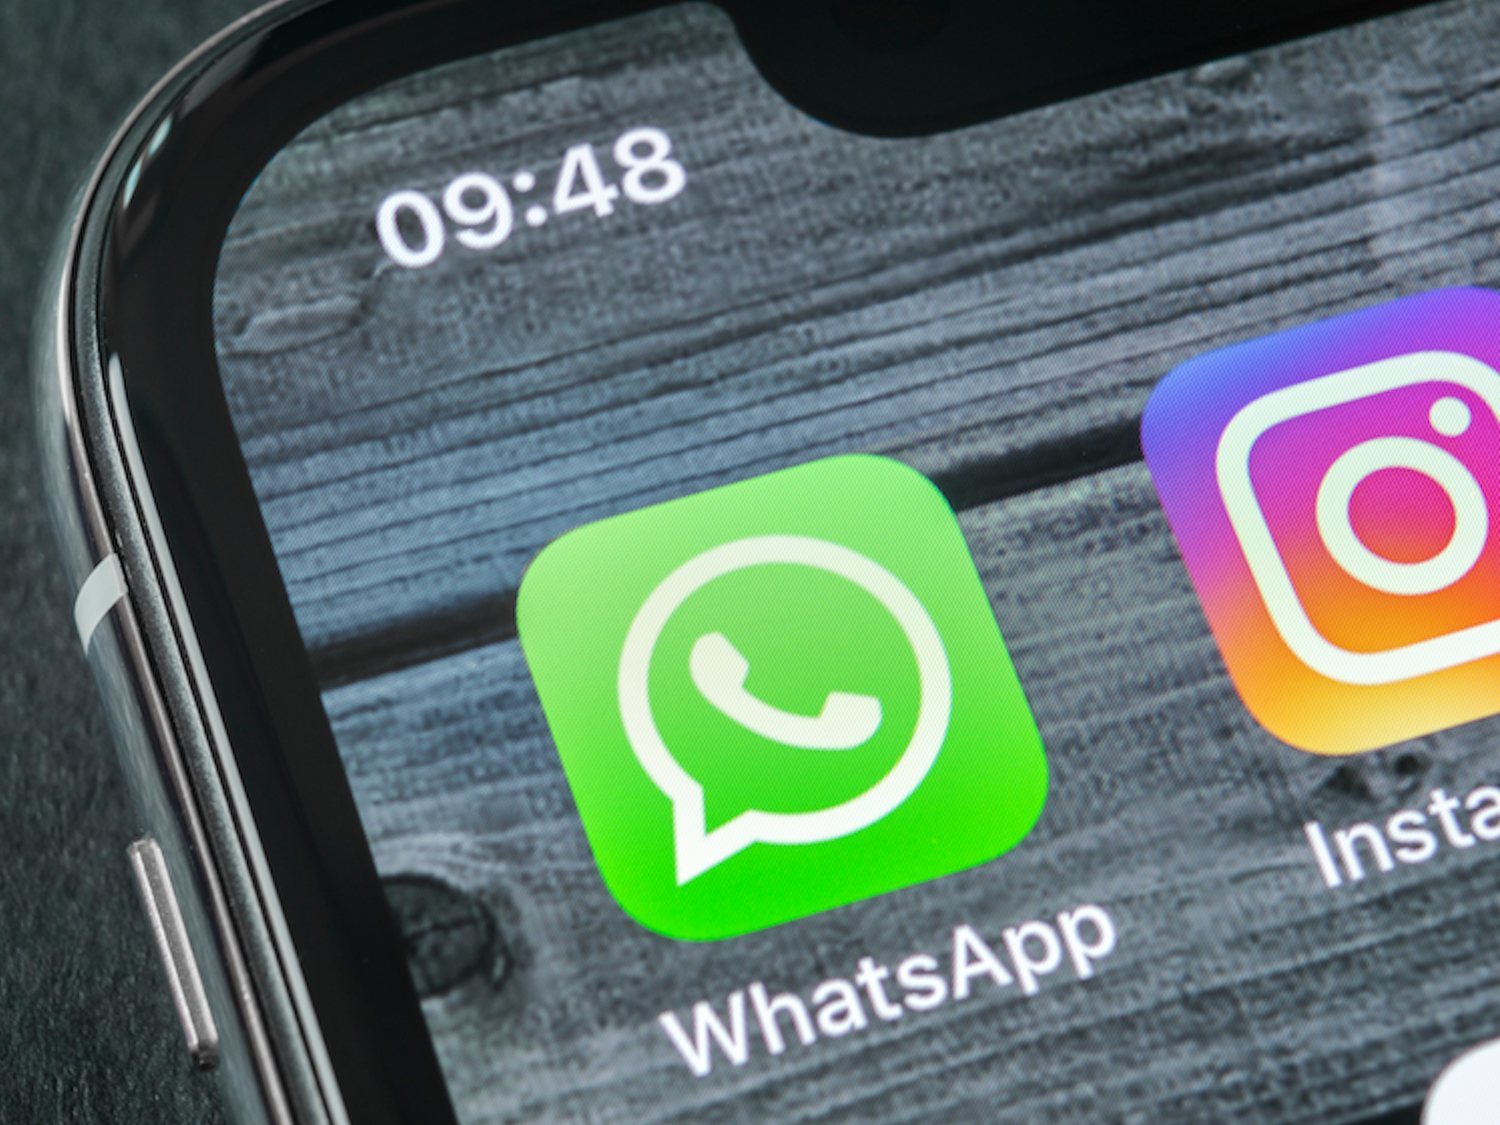 Facebook cambiará el nombre de Instagram y WhatsApp